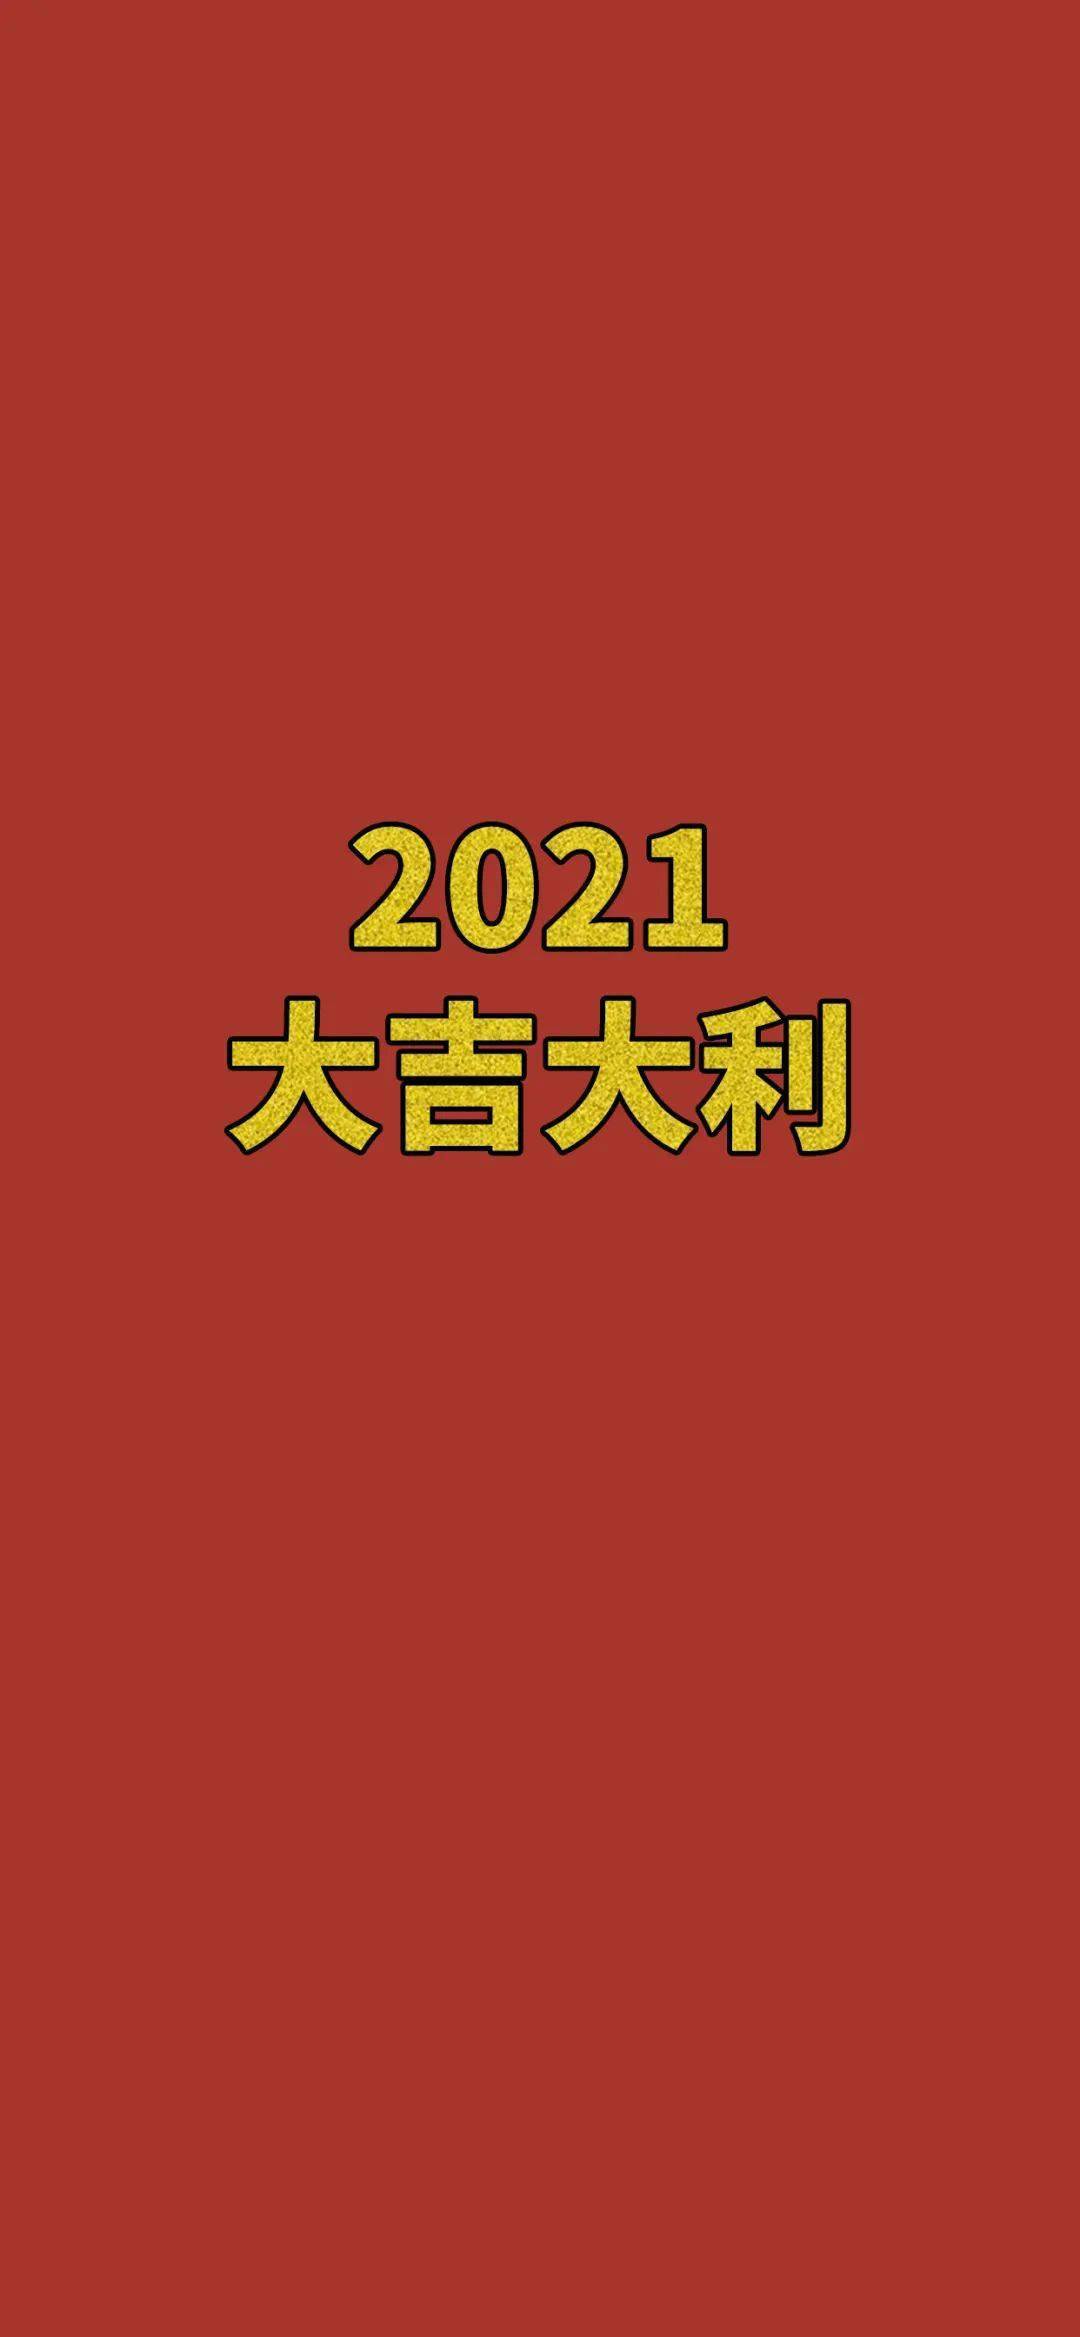 【壁纸】2021 大吉大利